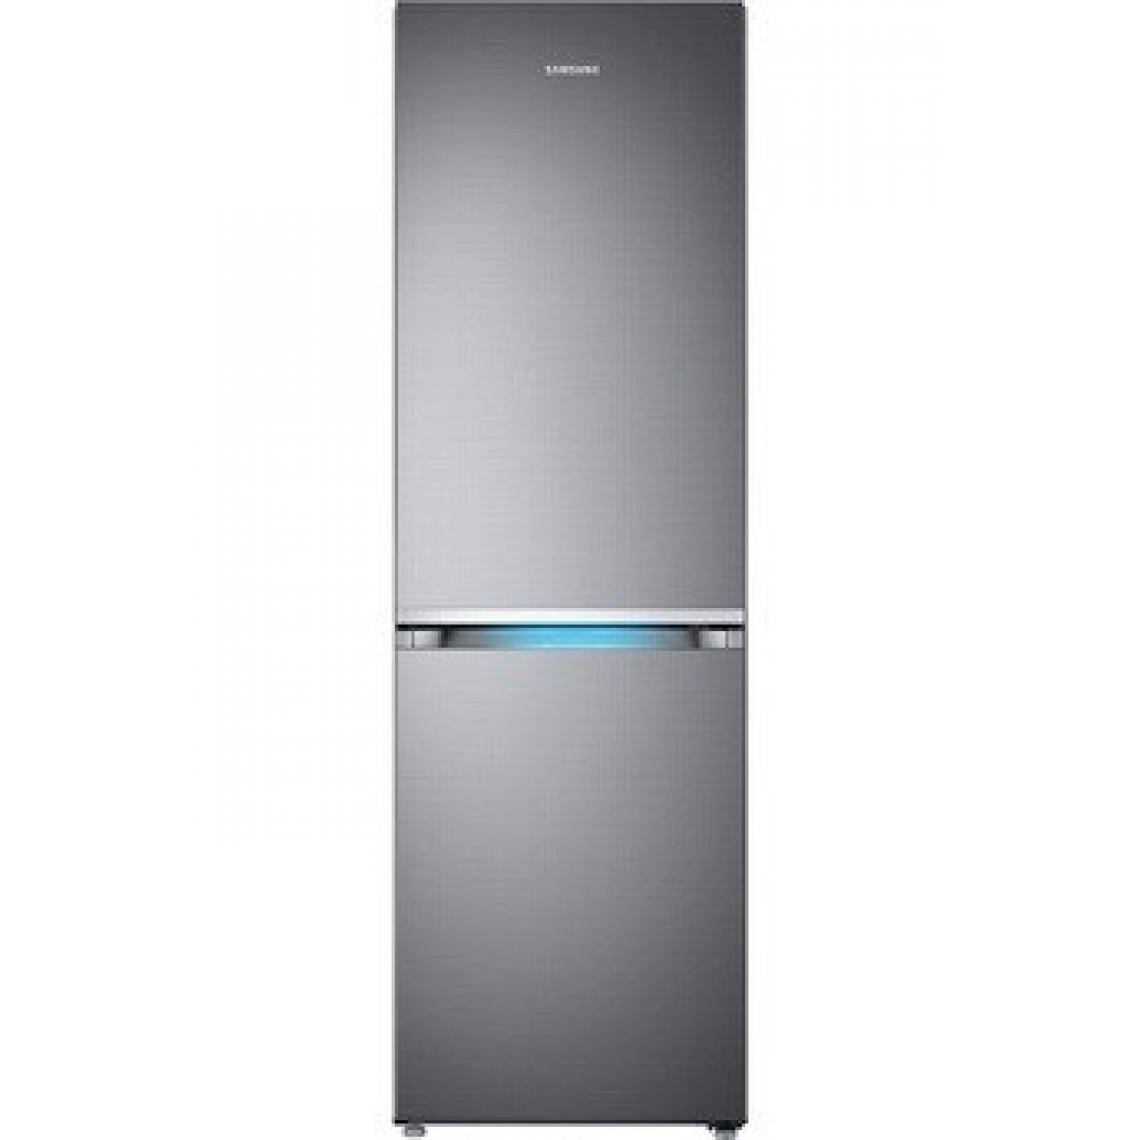 Samsung - Refrigerateur congelateur en bas Samsung RB33R8717S9 - Réfrigérateur